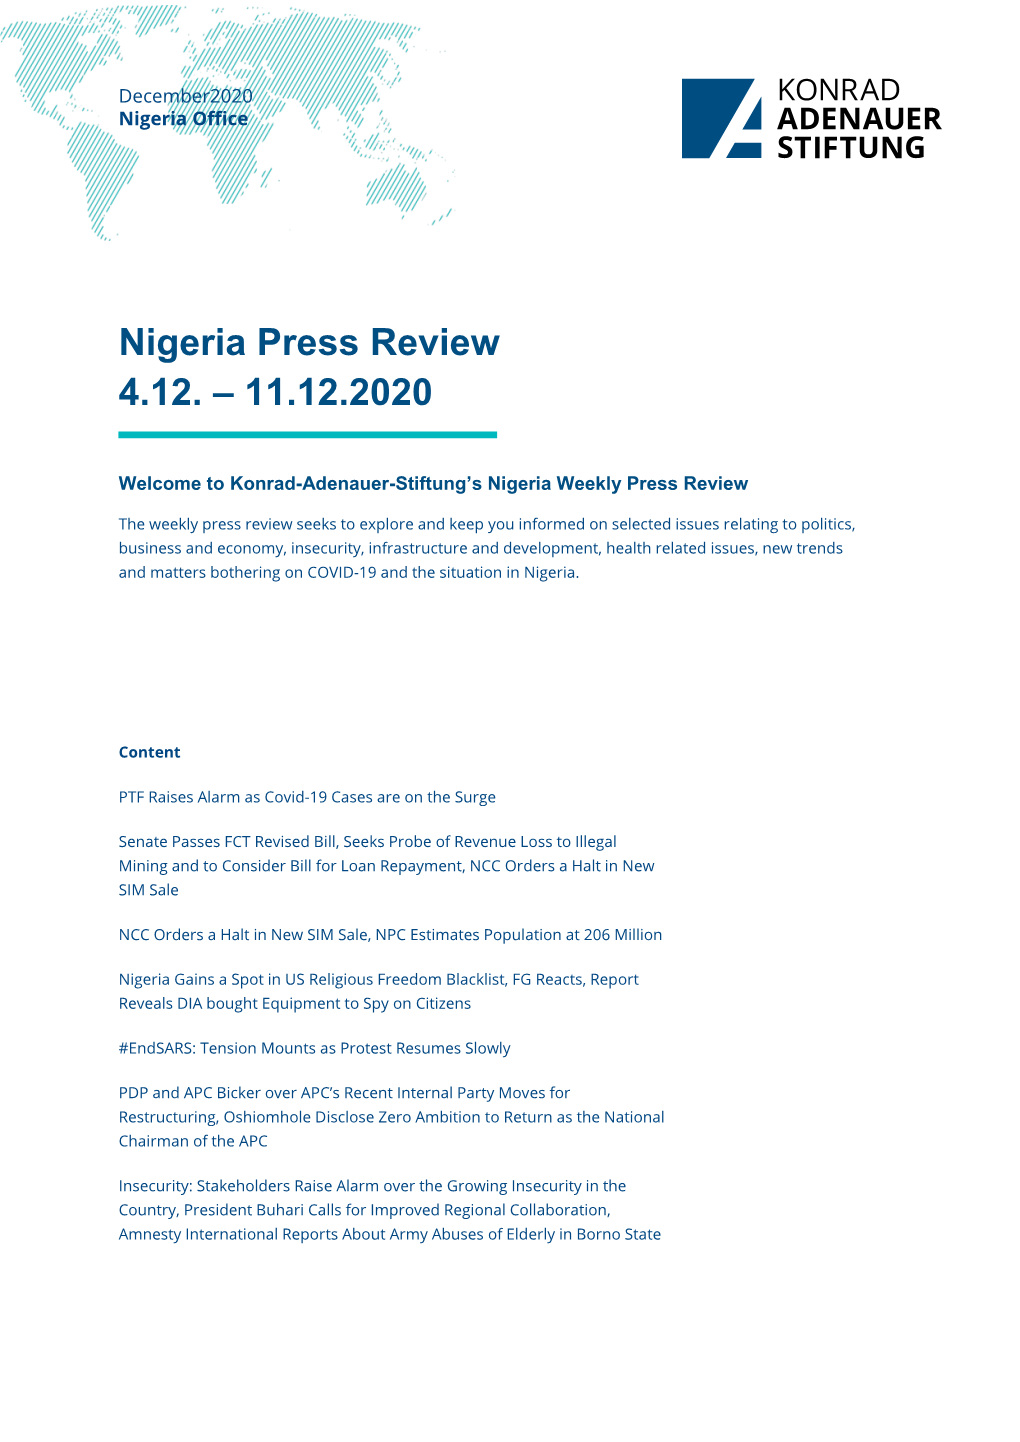 Nigeria Press Review 4.12. – 11.12.2020